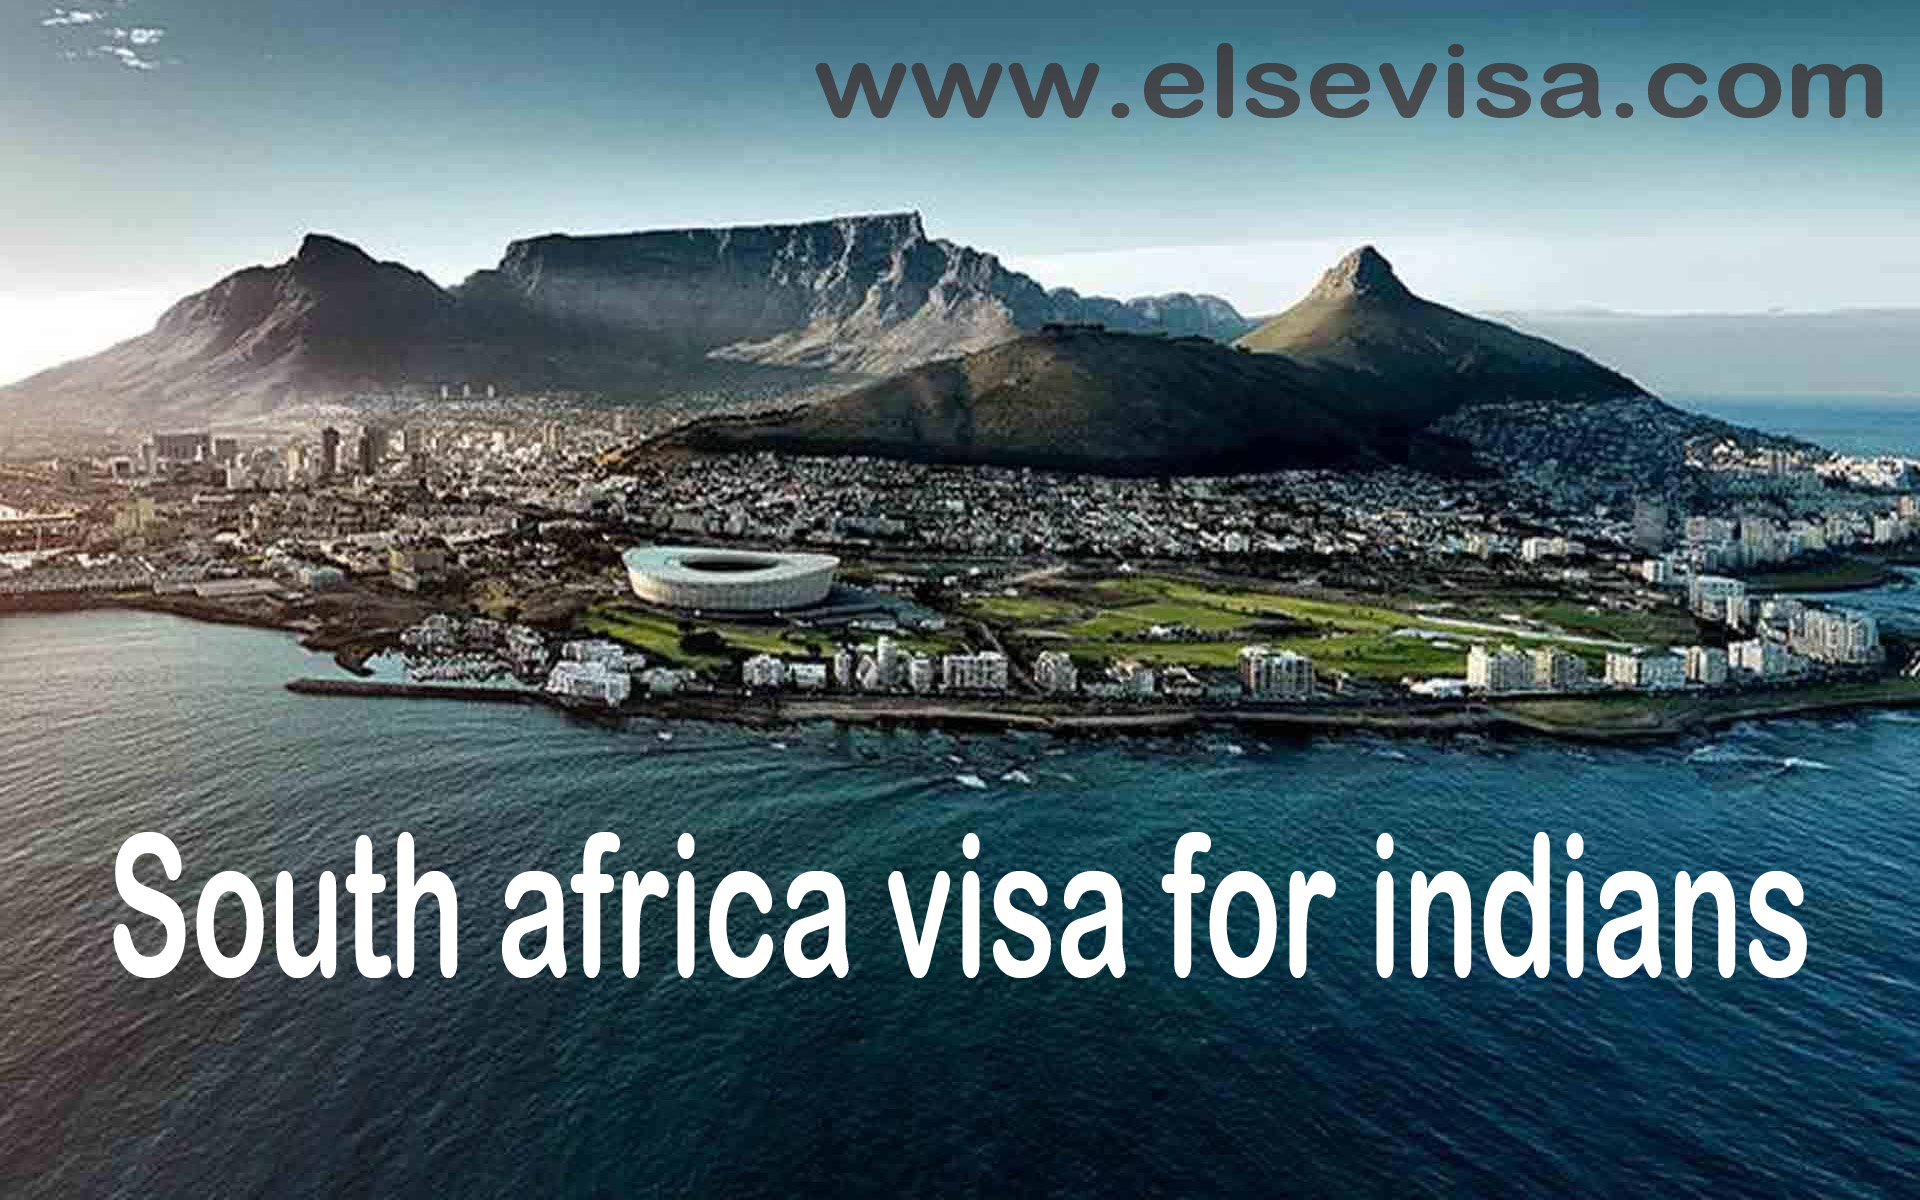 South africa visa for indians  - Else visa south africa